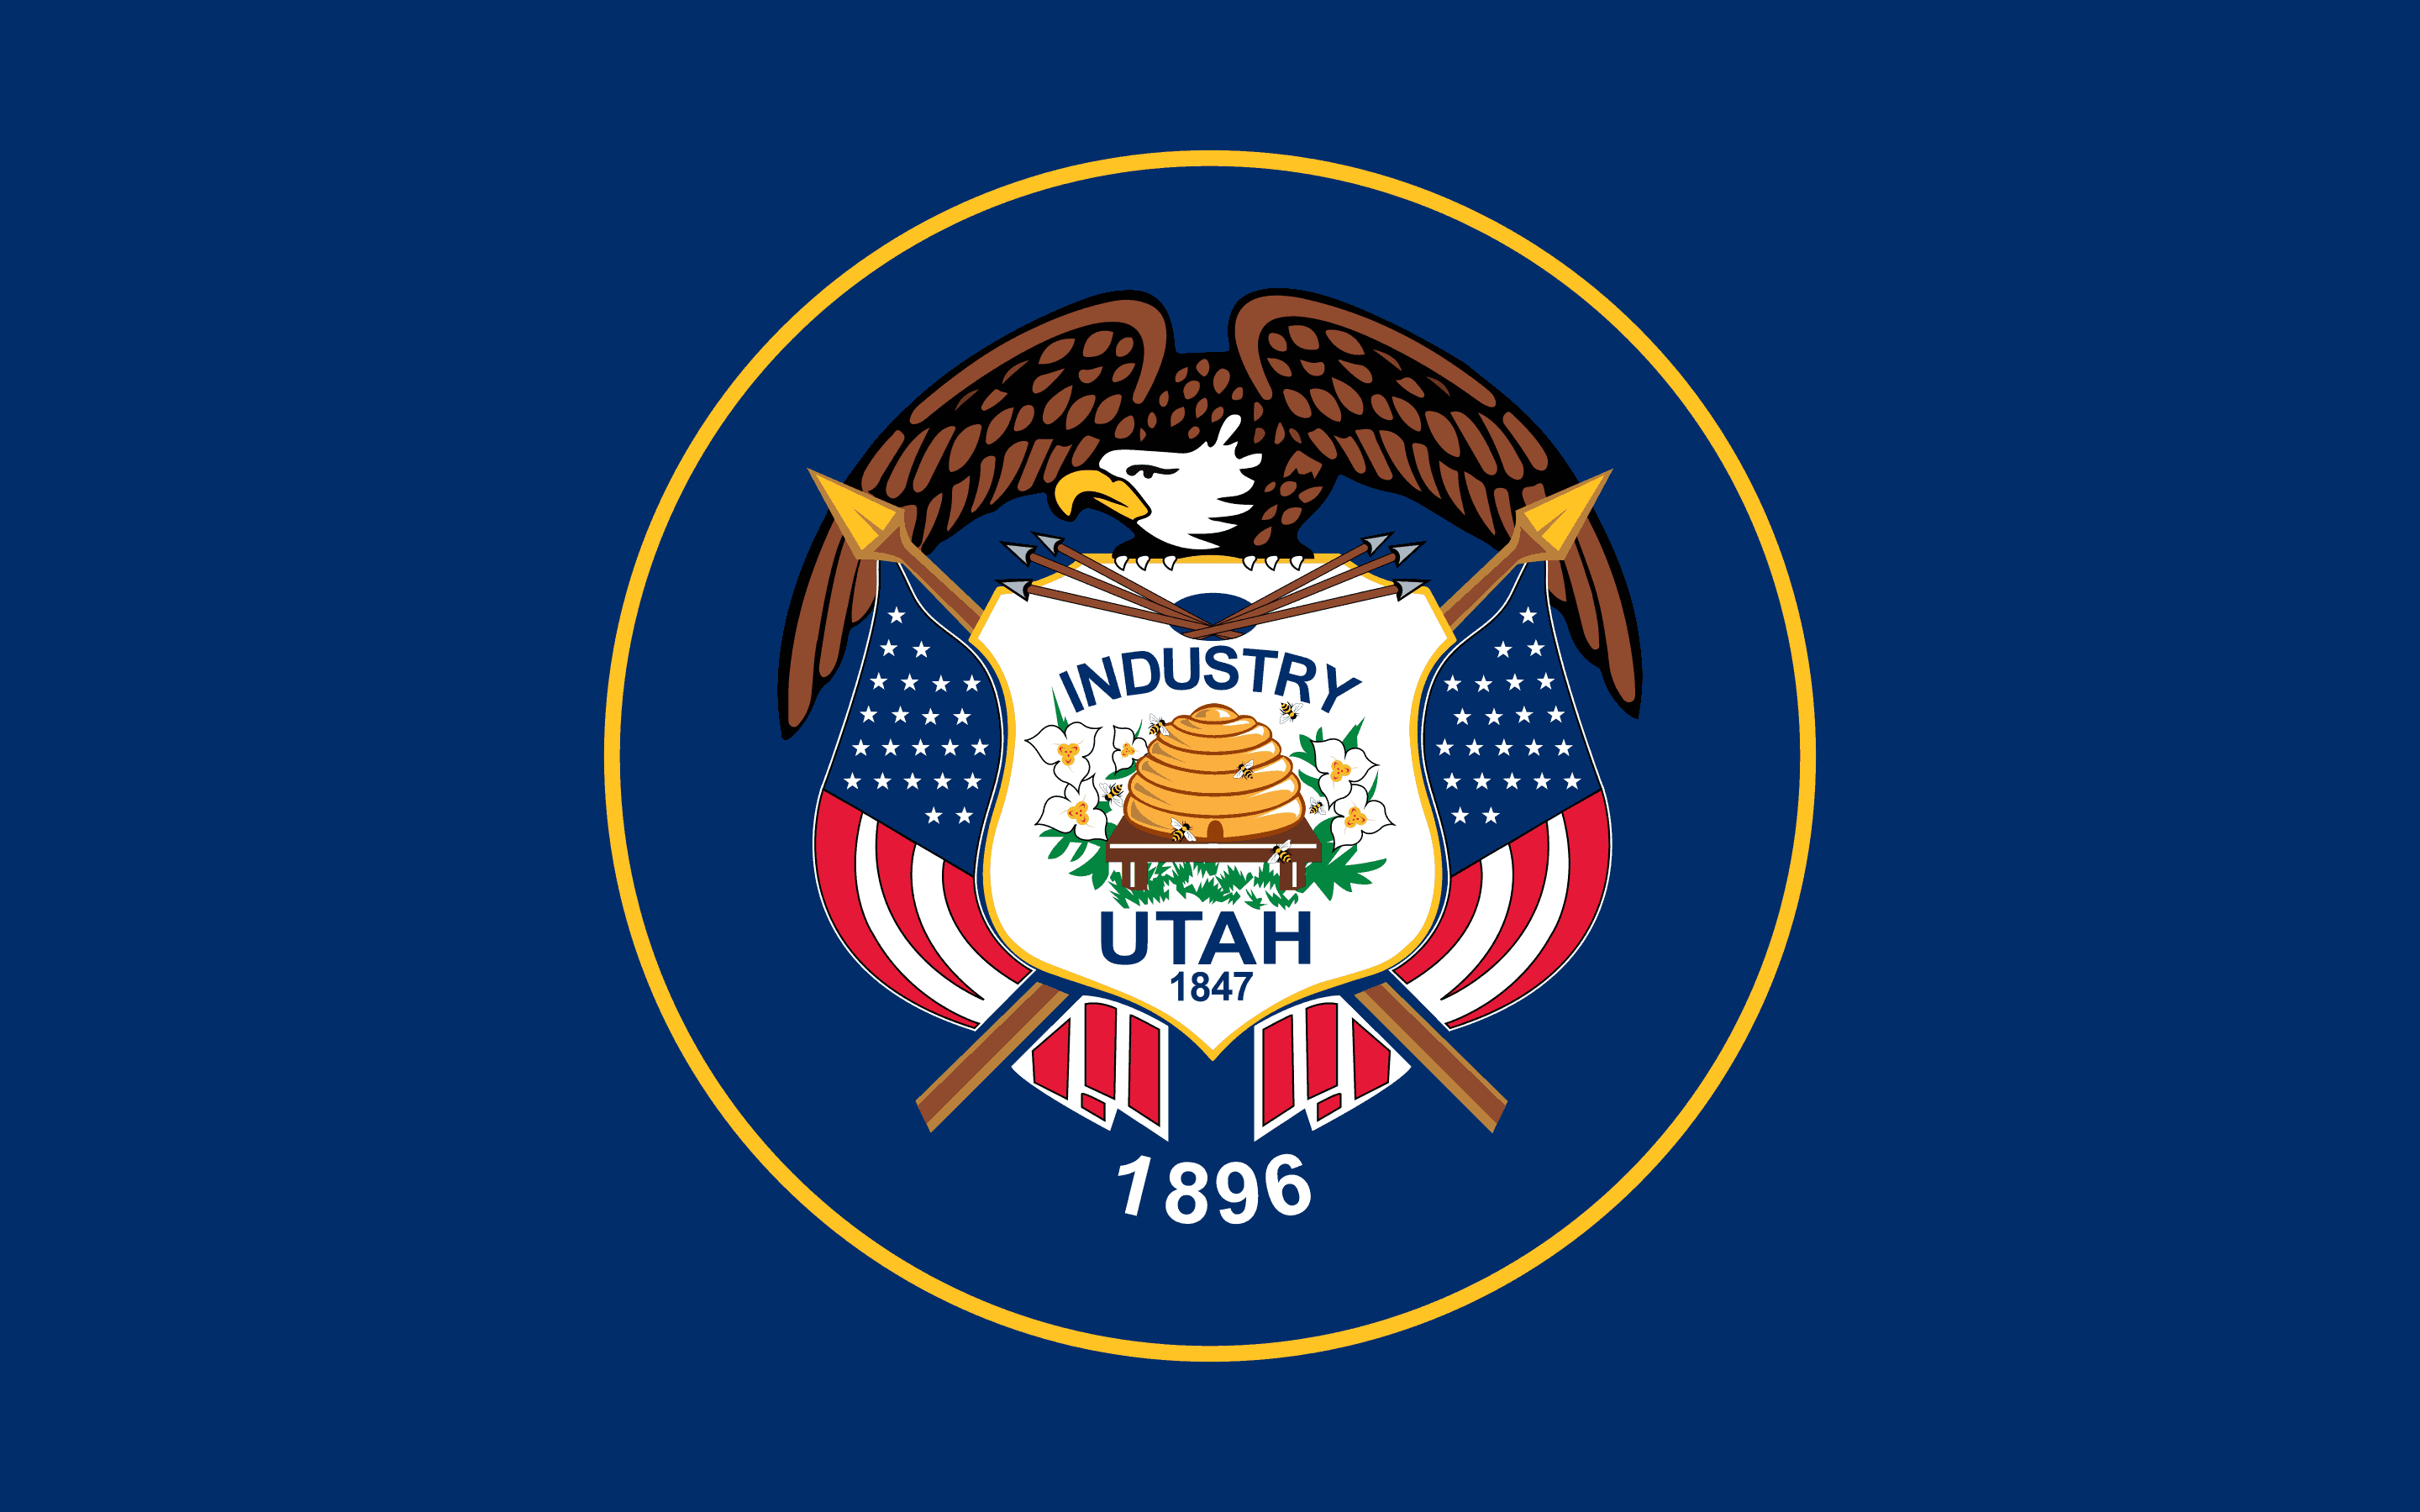 Drone Laws in Utah